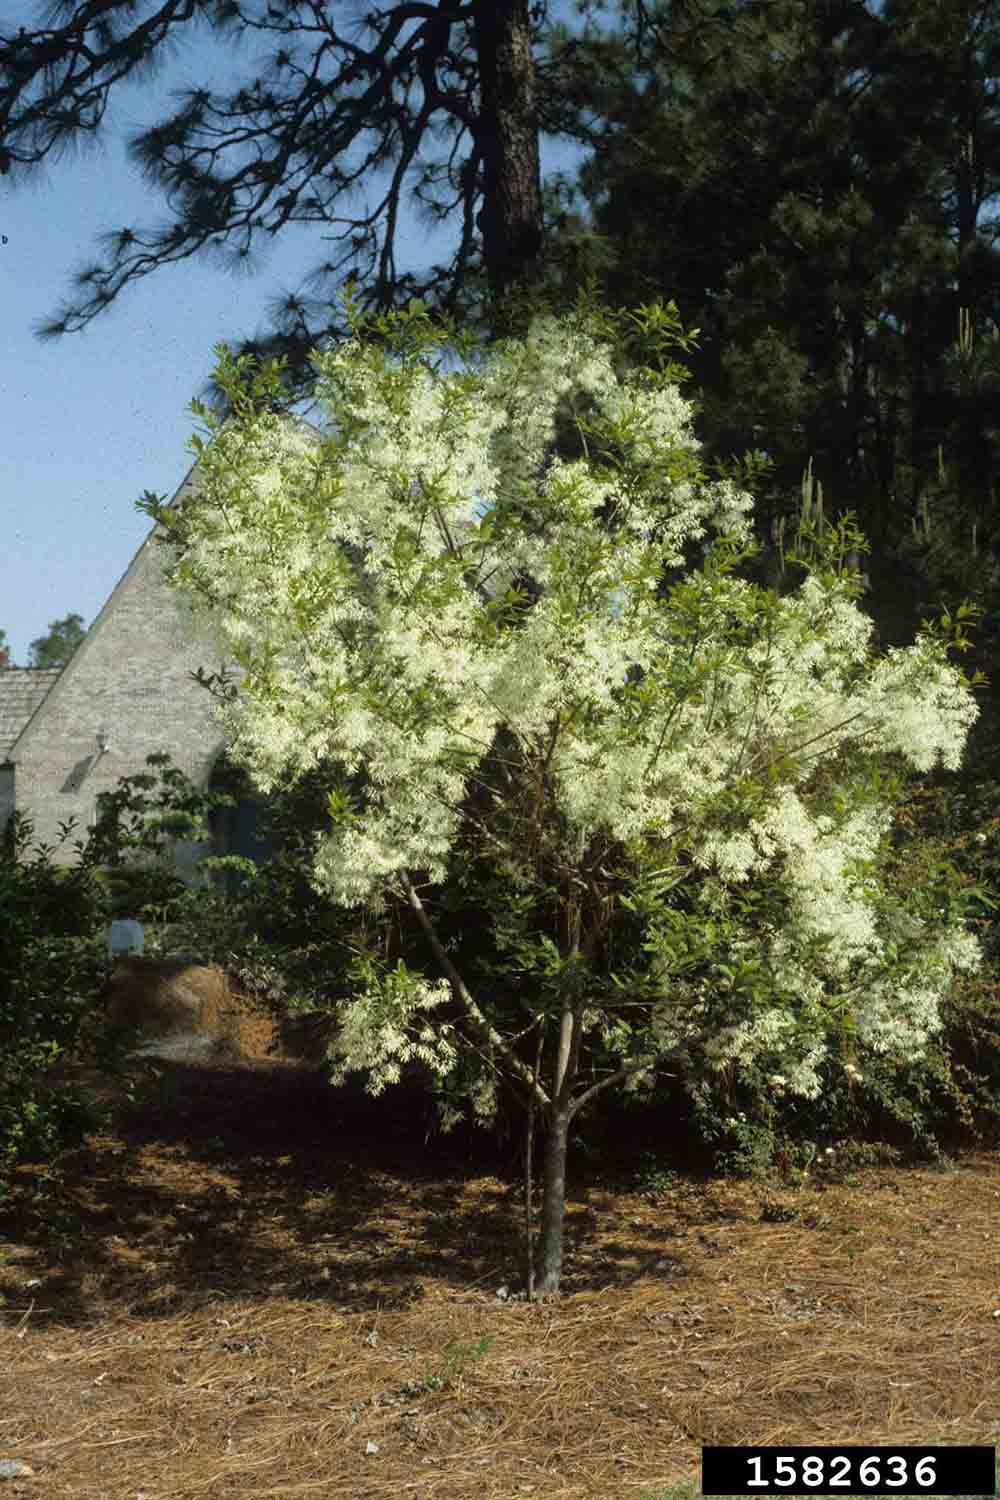 Fringe tree in bloom